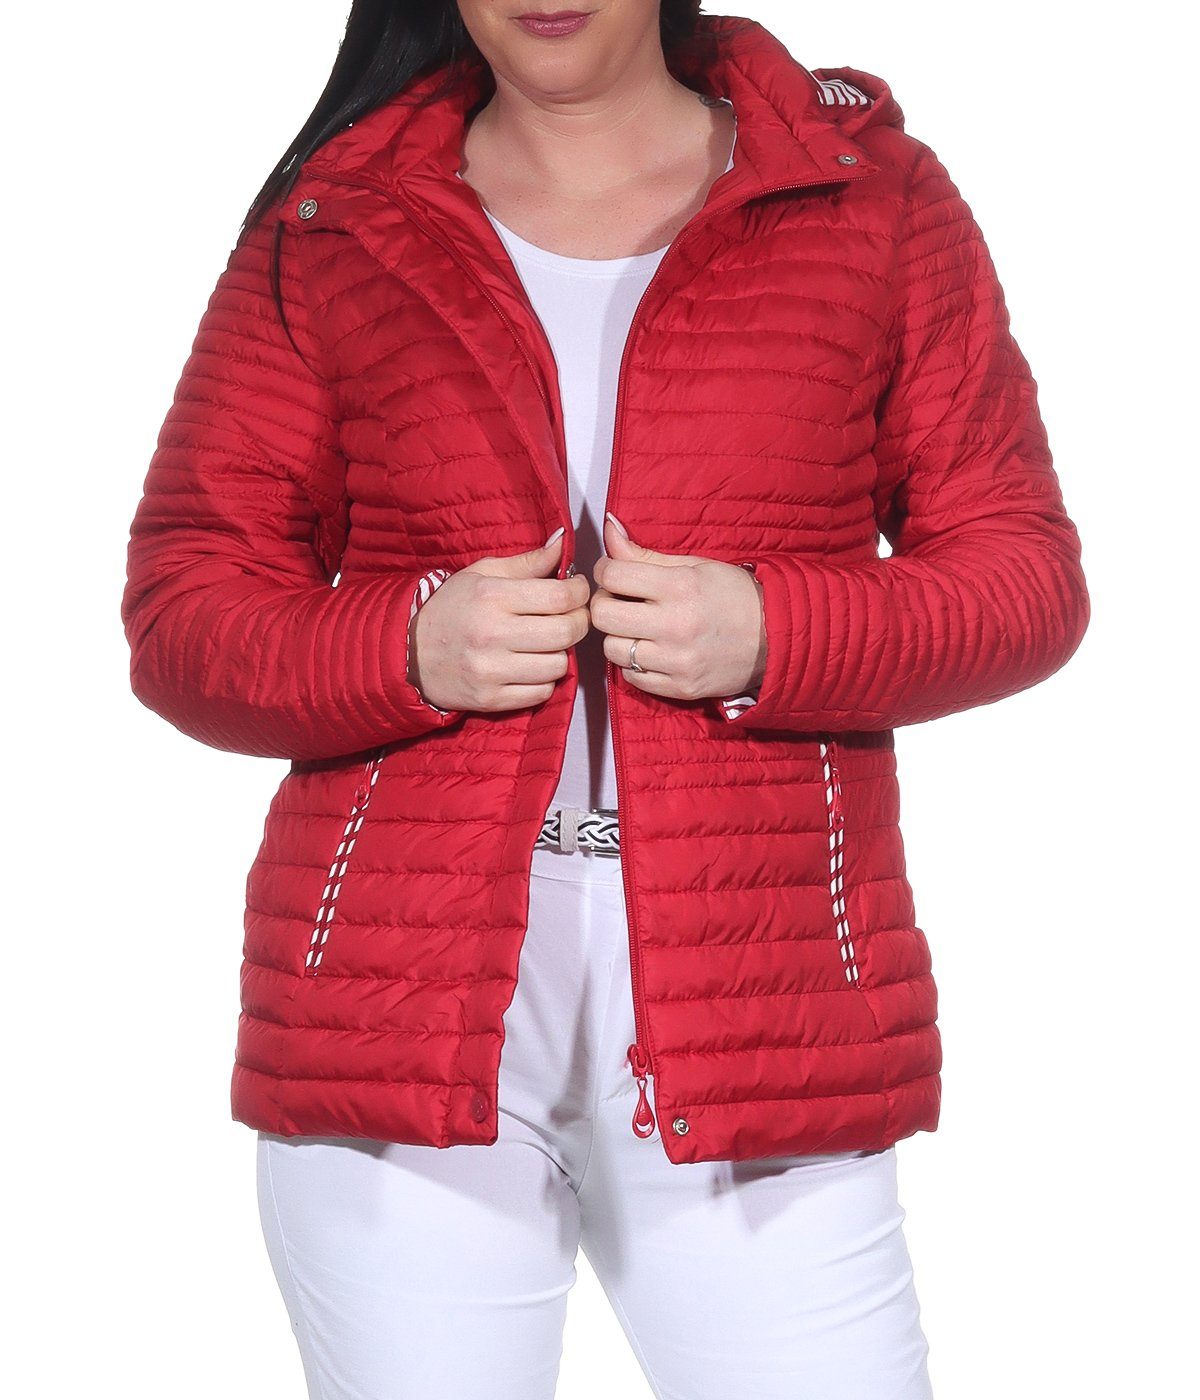 Aurela Damenmode Steppjacke Damen Sommerjacke leichte Outdoor Jacke auch in  großen Größen erhältlich, angenehm leichte Übegrangsjacke